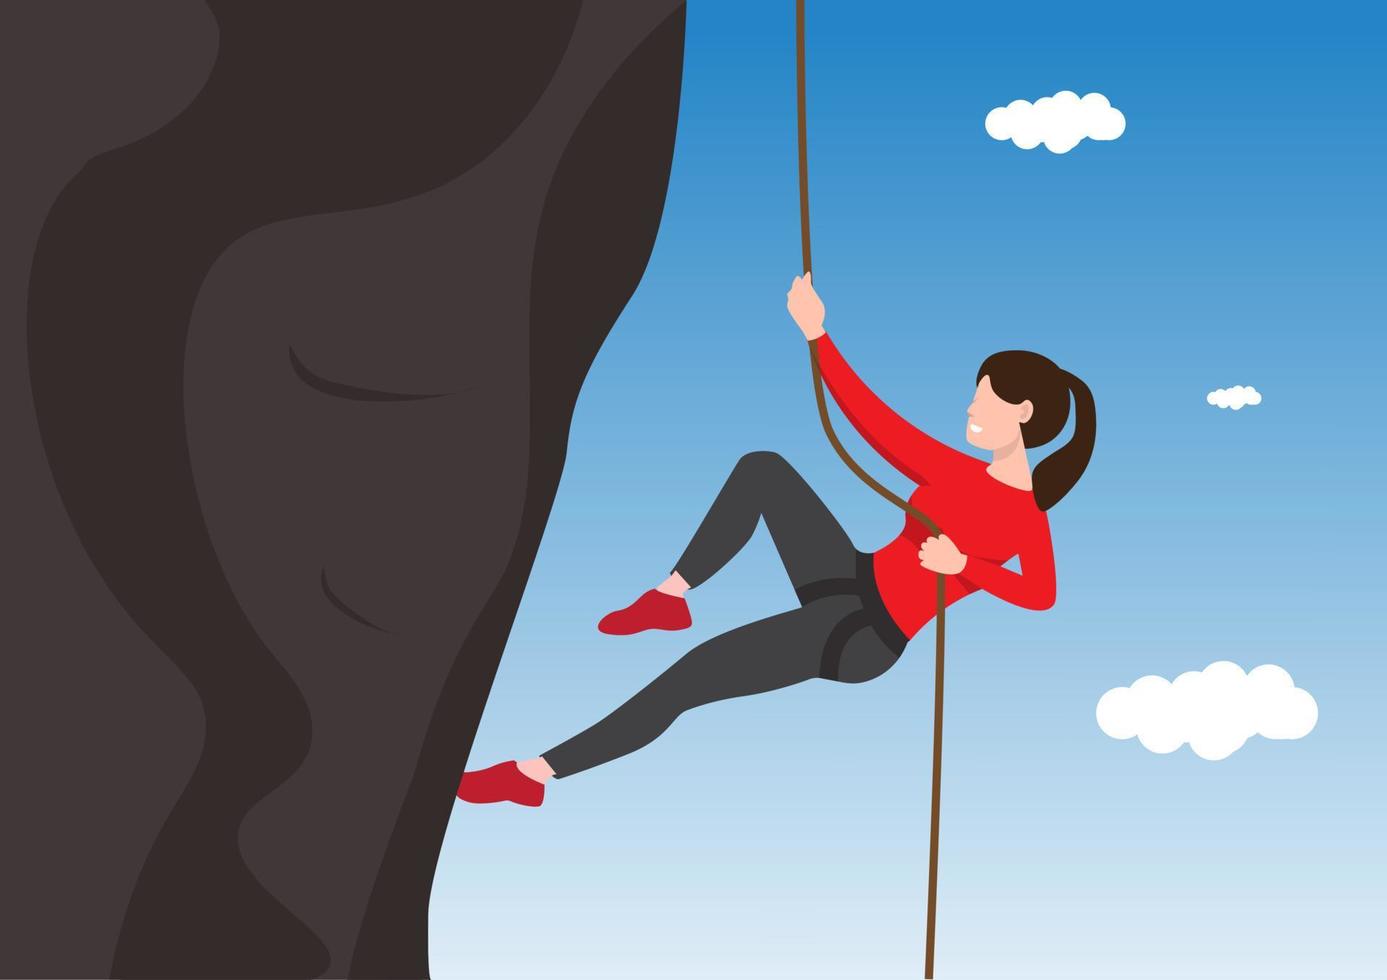 Mädchen Klettern auf den Felsen tapfere Frau den Berg mit einem Seil erklimmen. das Konzept der mentalen Herausforderung. flache vektordesignillustration vektor